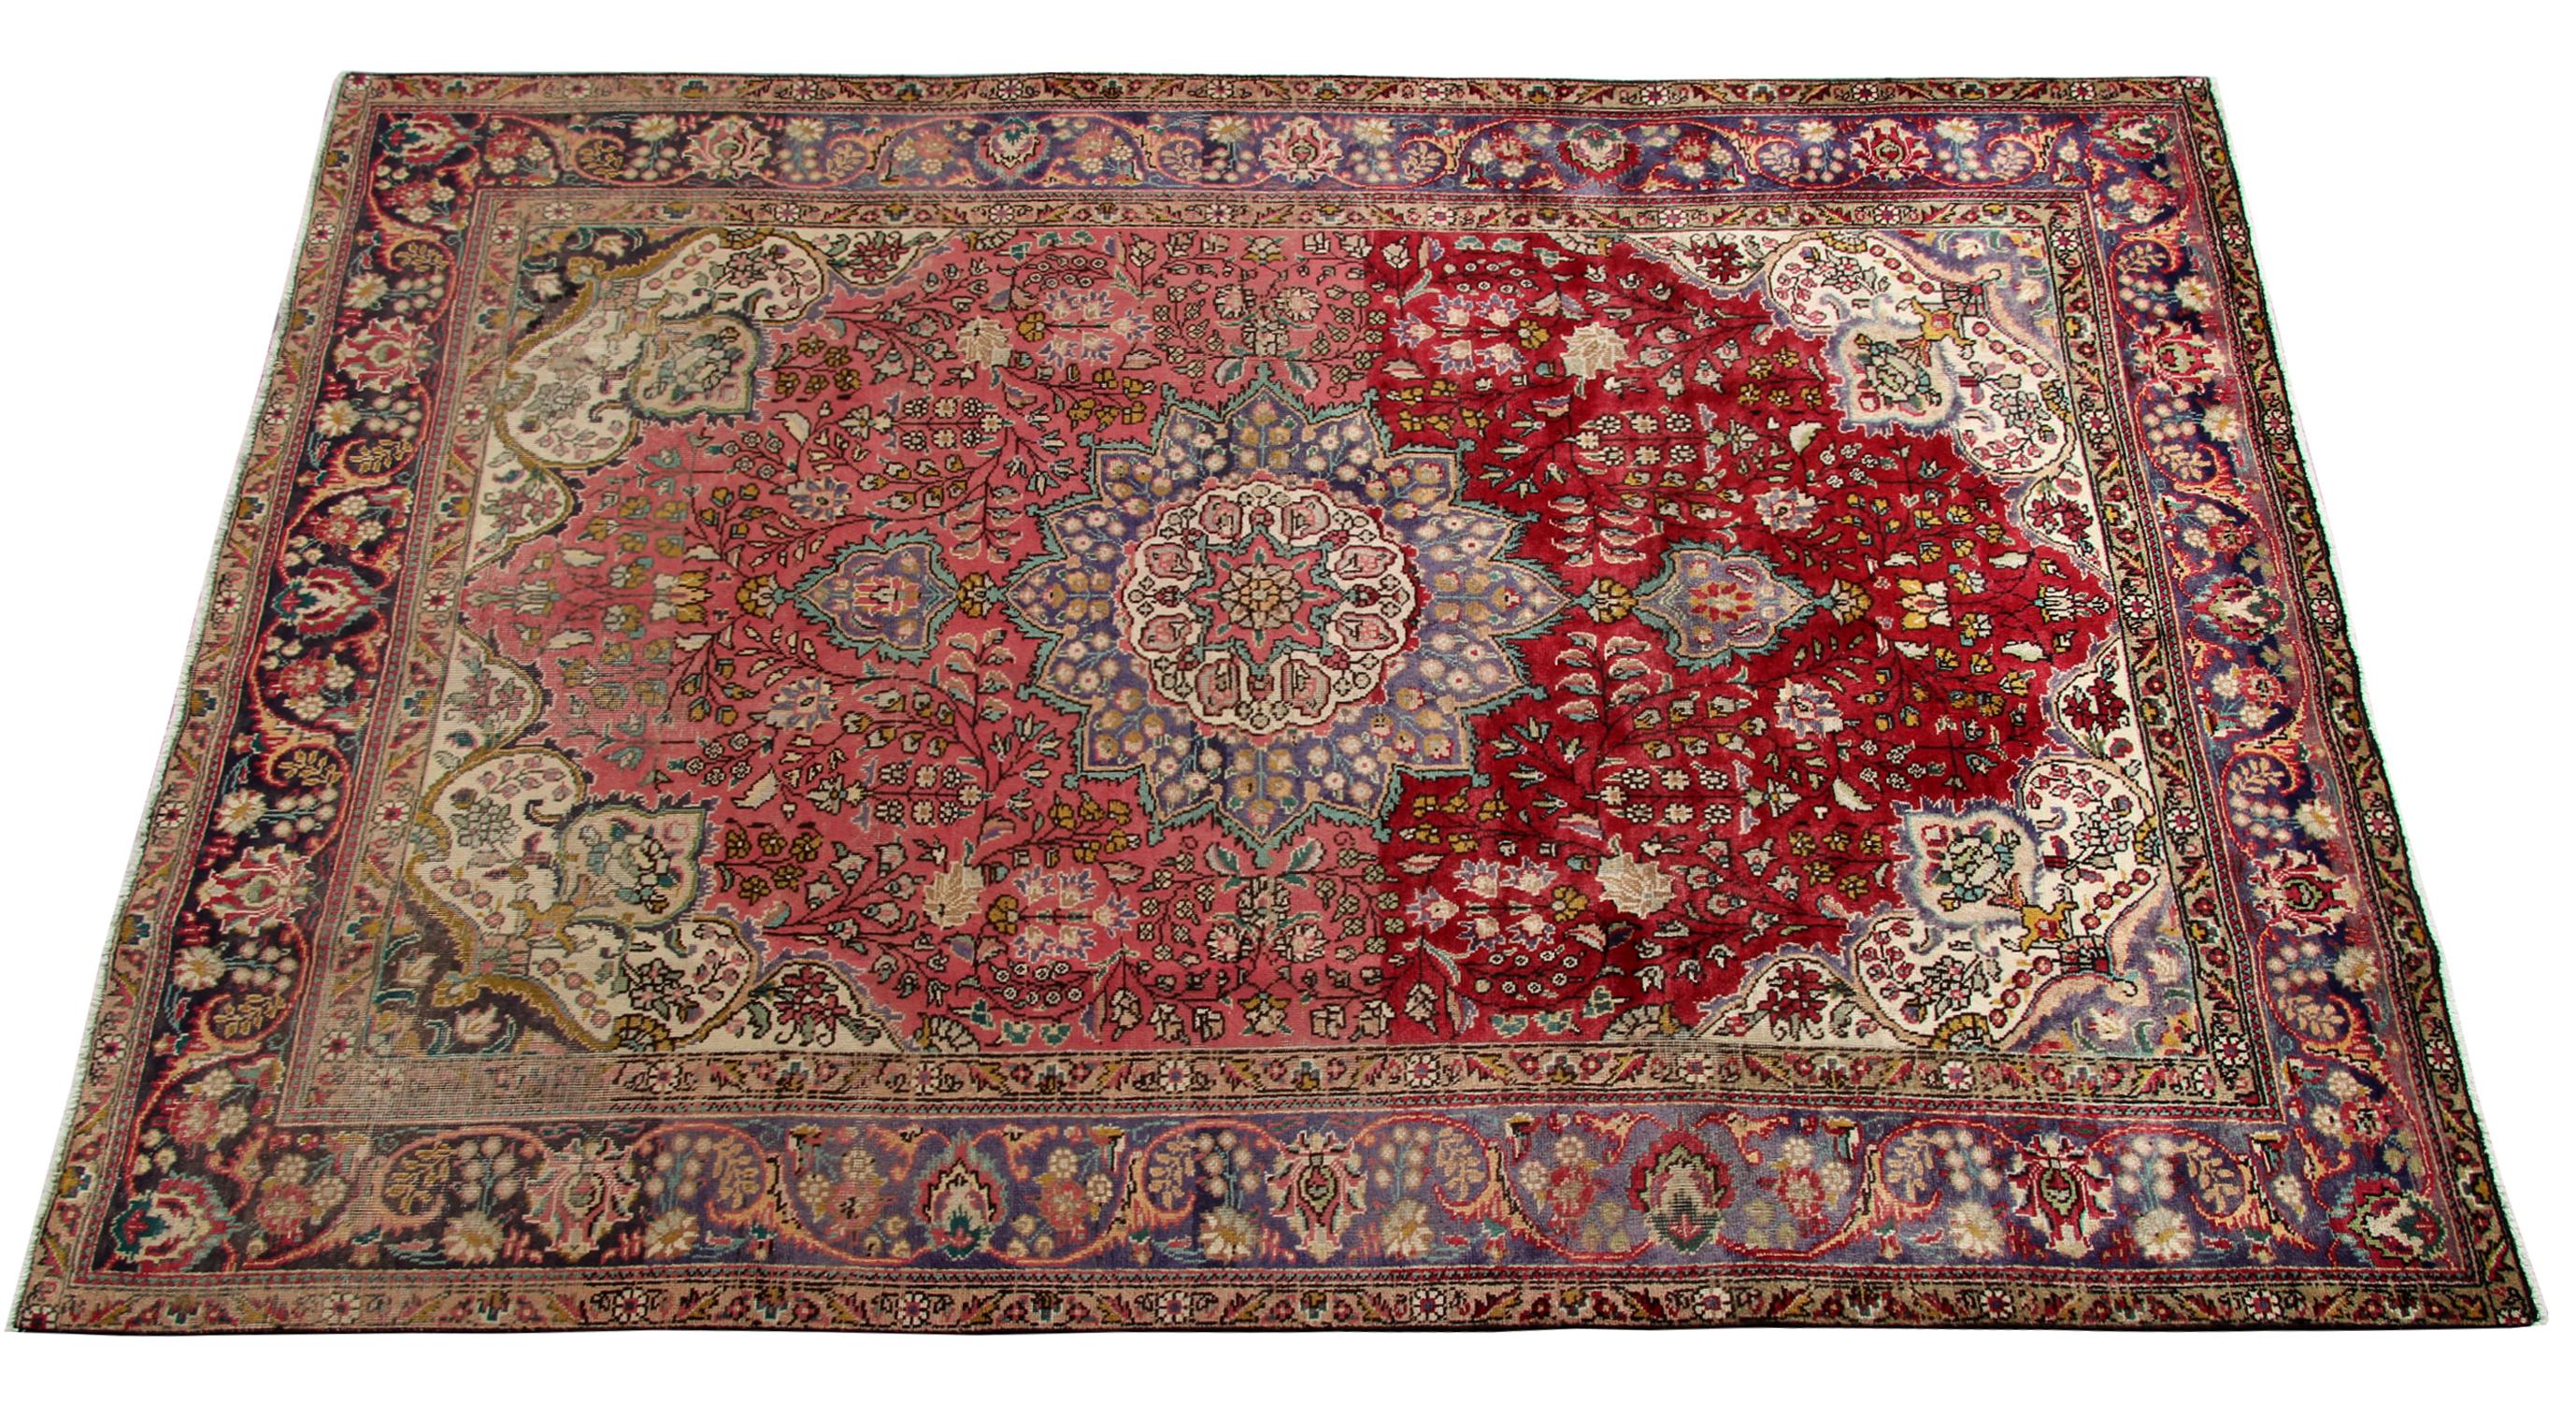 Ce magnifique tapis en laine est un exemple fantastique des tapis tissés dans les années 1970. Il présente un élégant motif traditionnel de médaillon central. Il est entouré d'un motif et d'une bordure très détaillés et tissé dans une fantastique